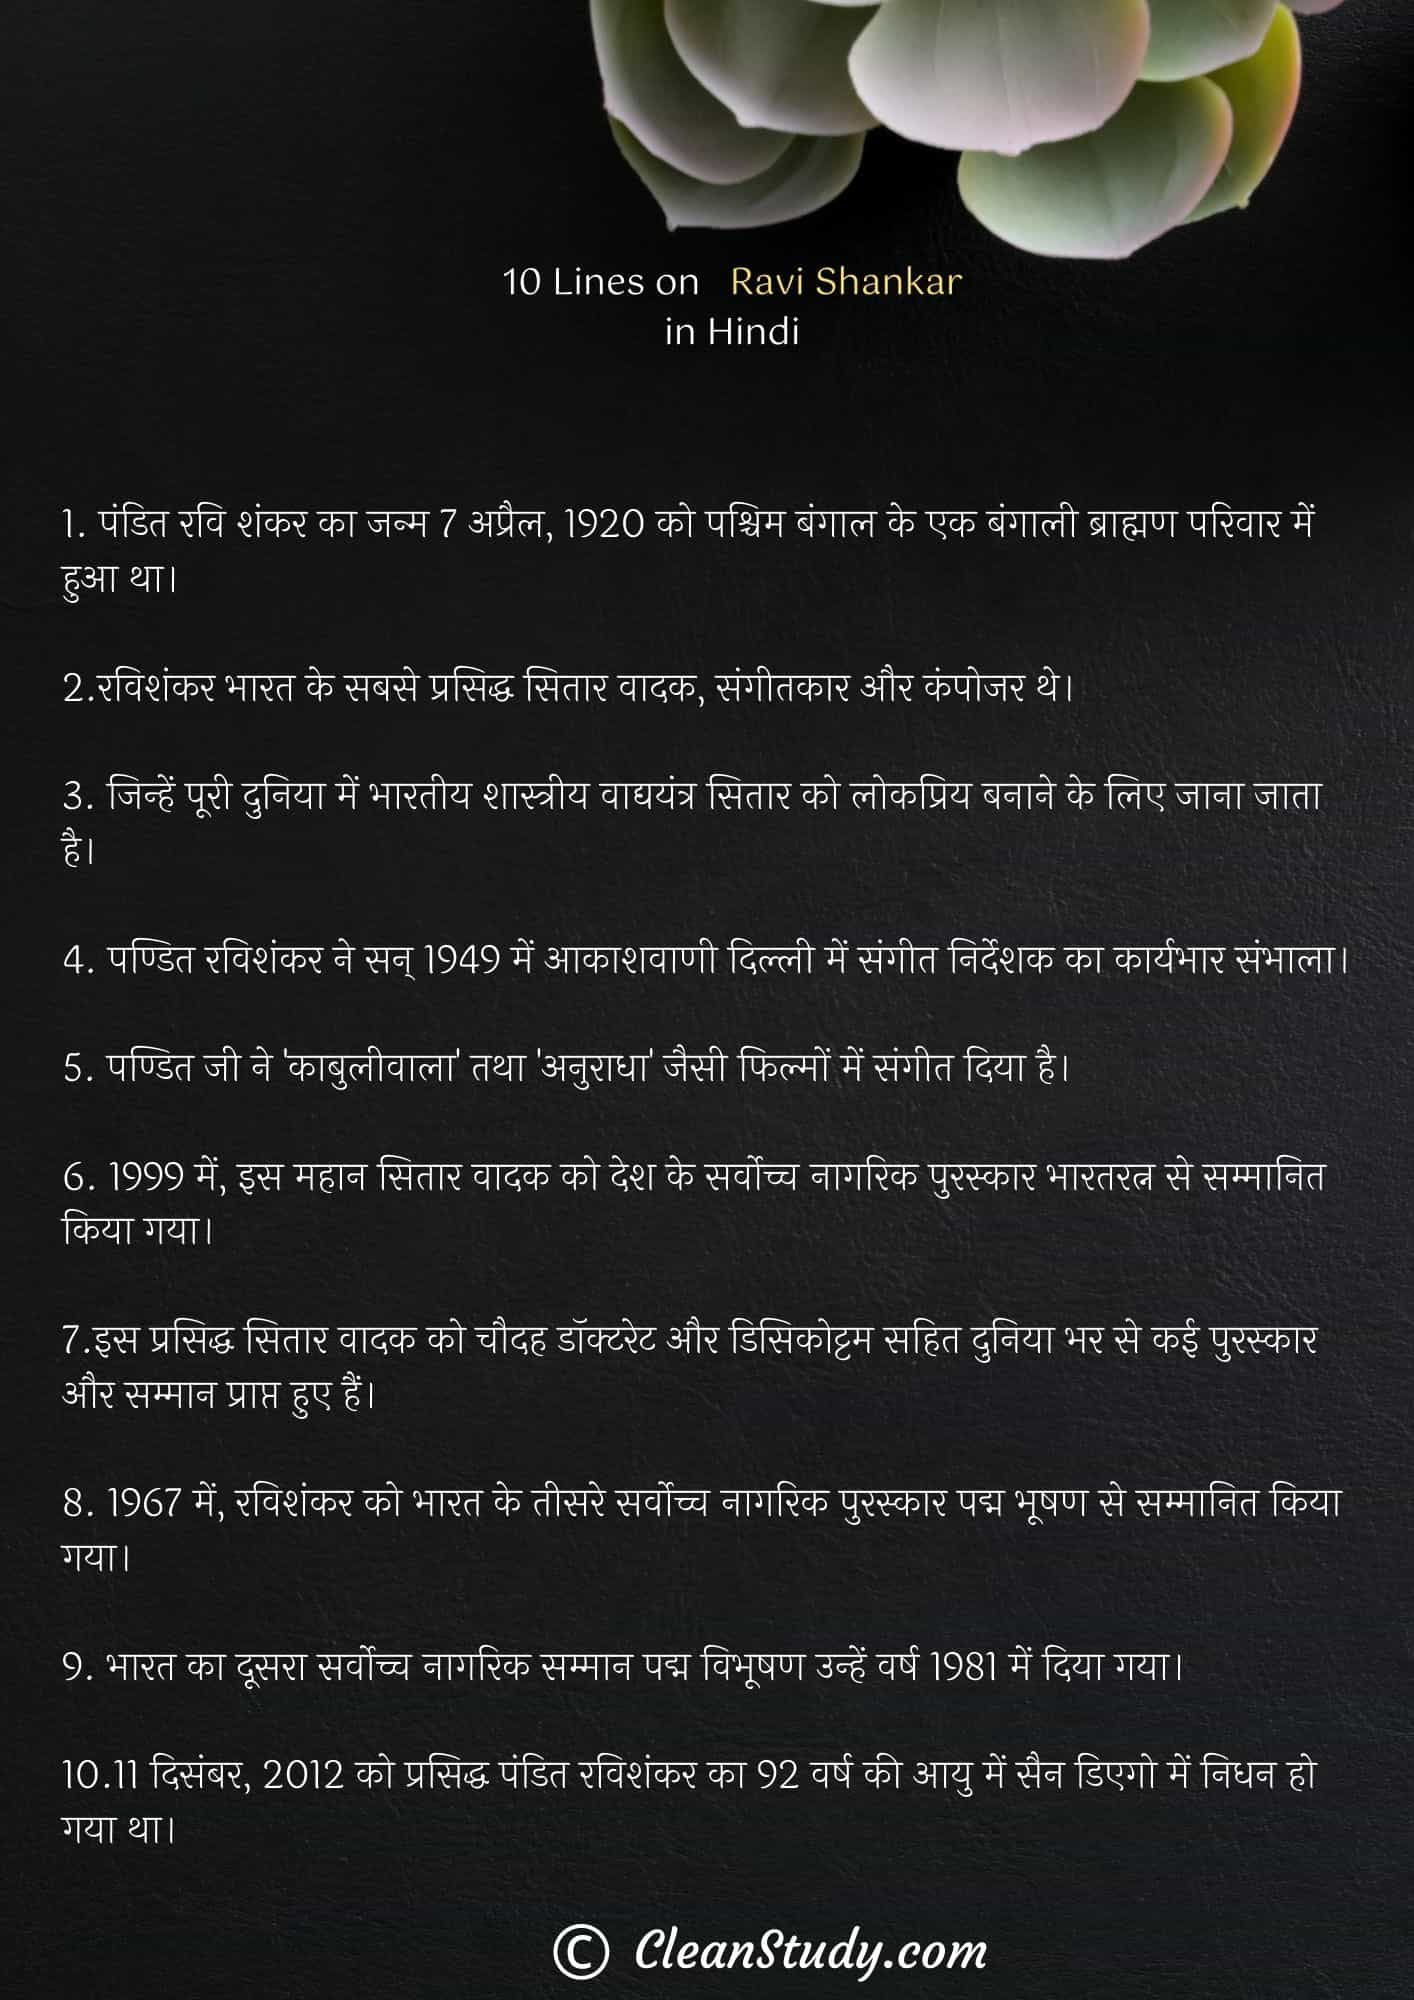 10 Lines on Ravi Shankar in Hindi